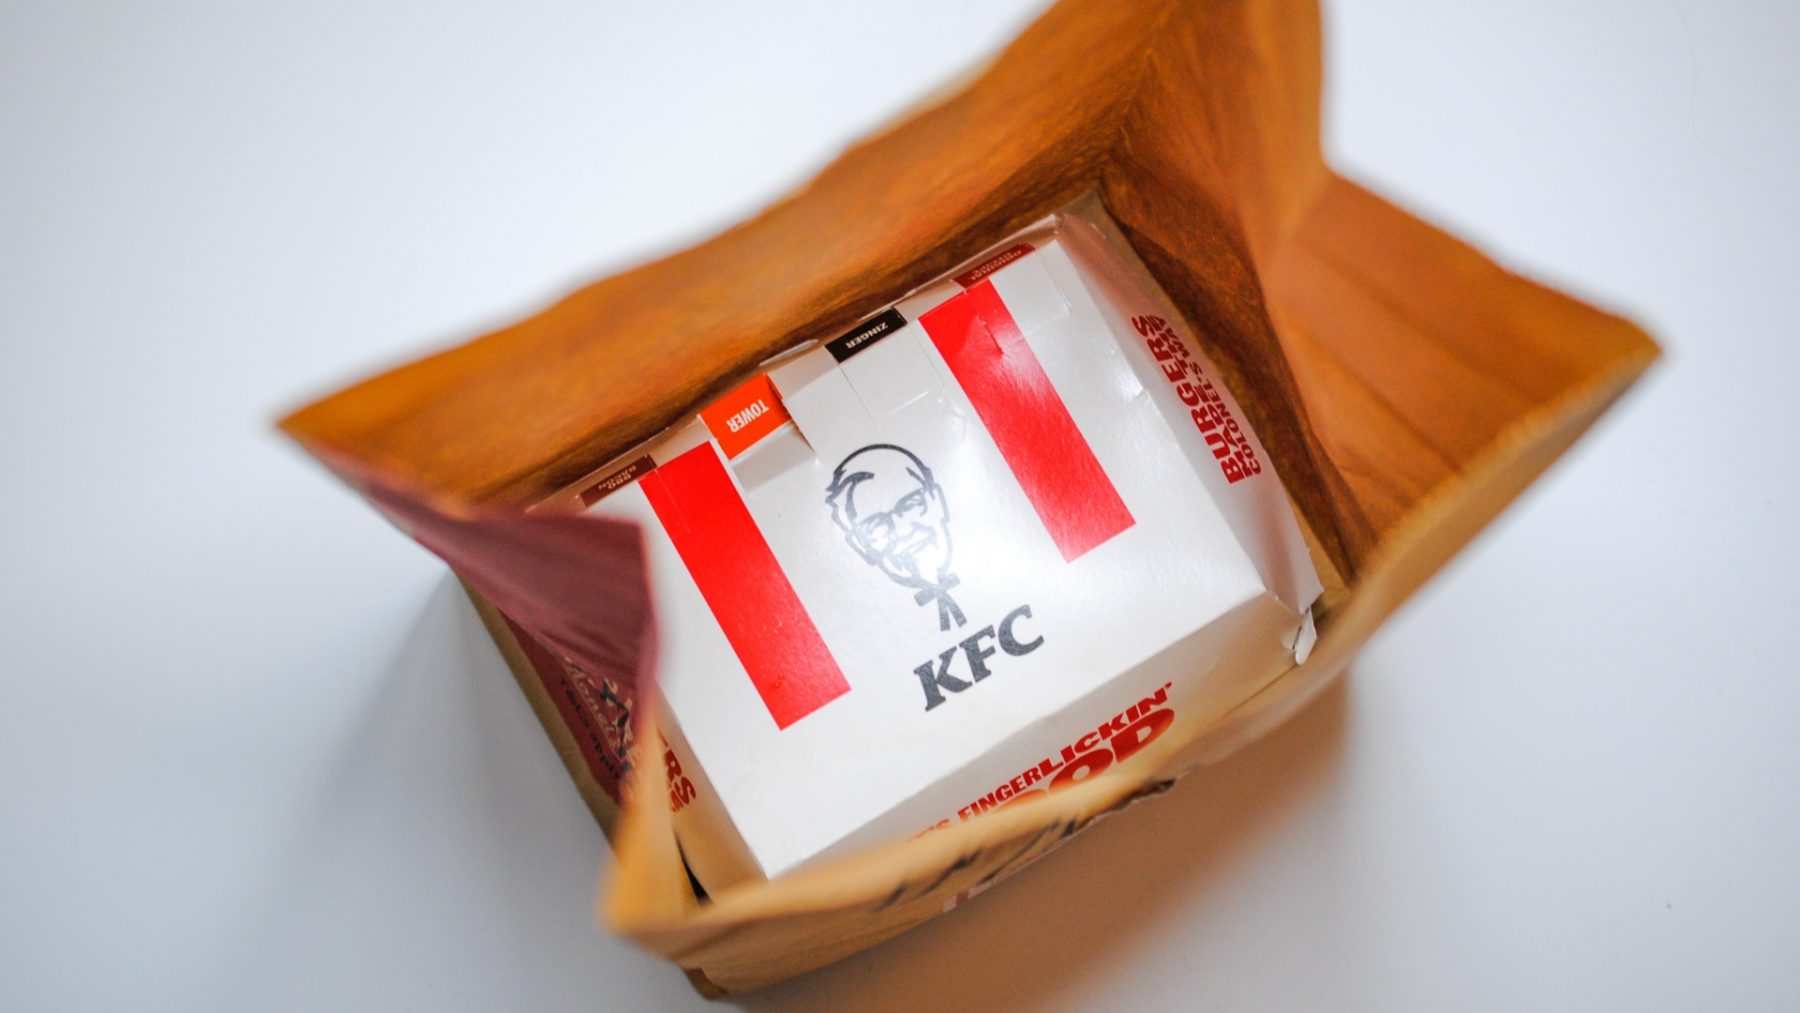 Man die door fout is systeem half jaar gratis KFC-maaltijden at moet gevangenis in